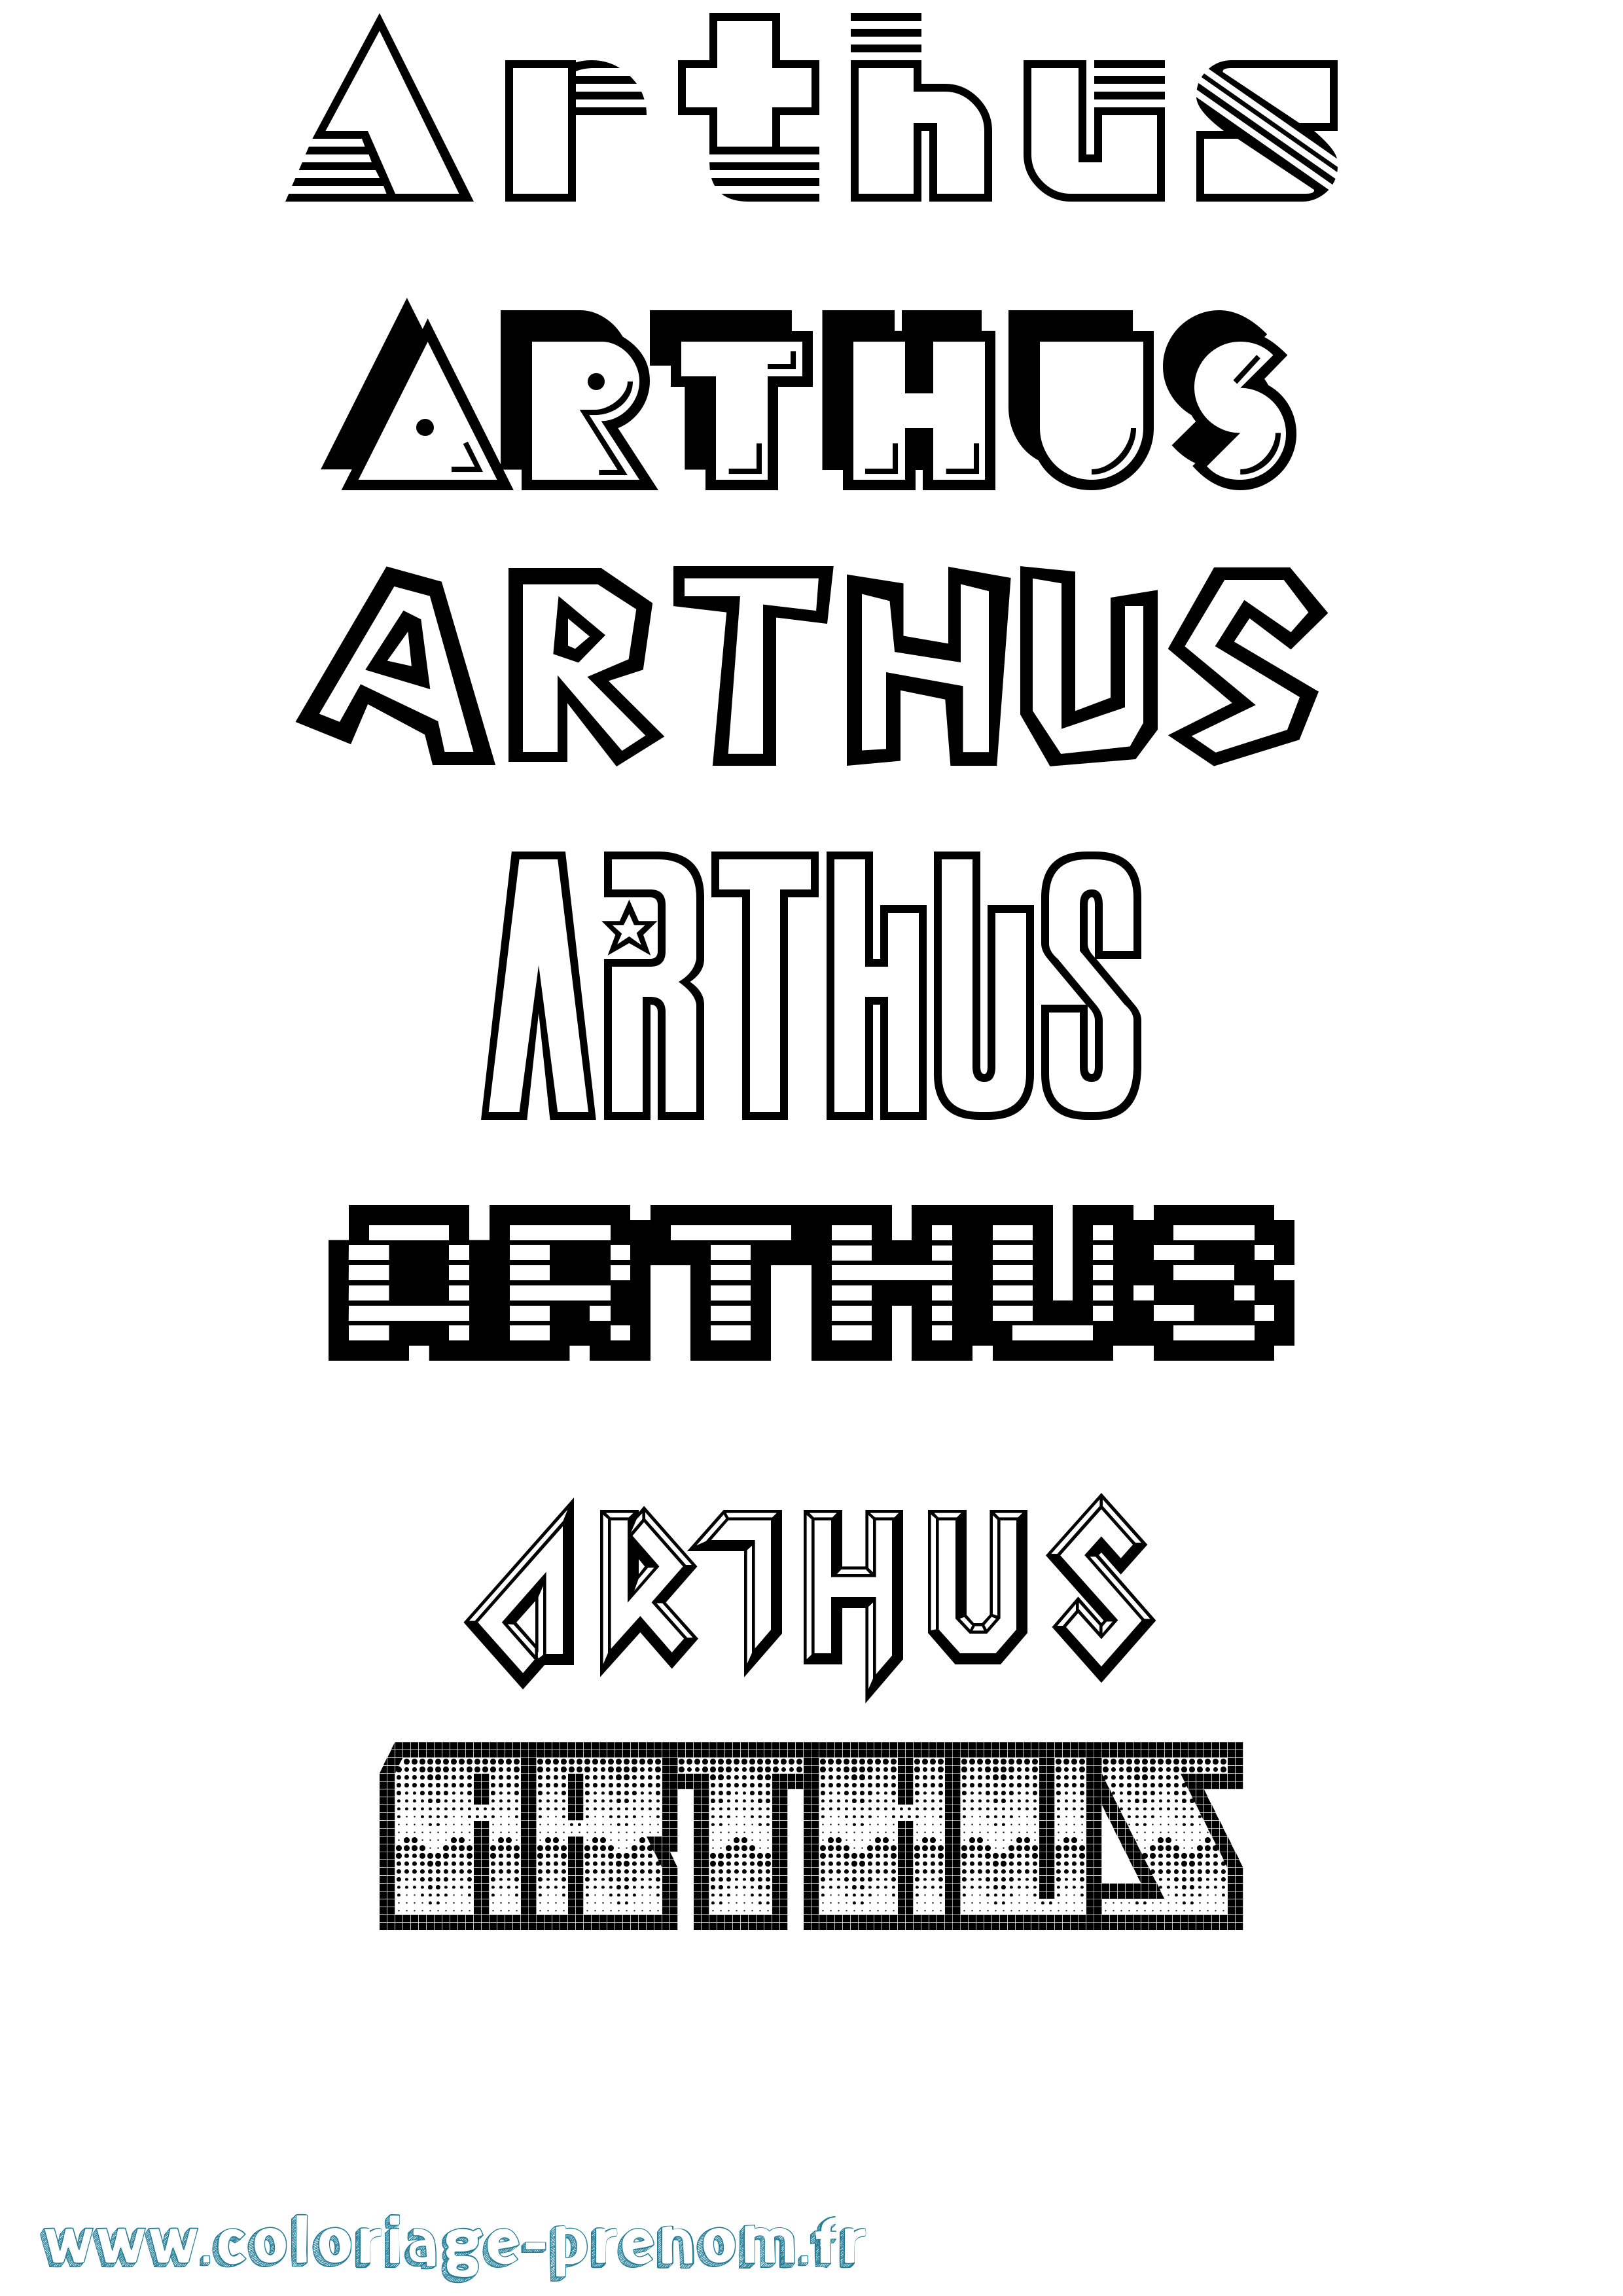 Coloriage prénom Arthus Jeux Vidéos